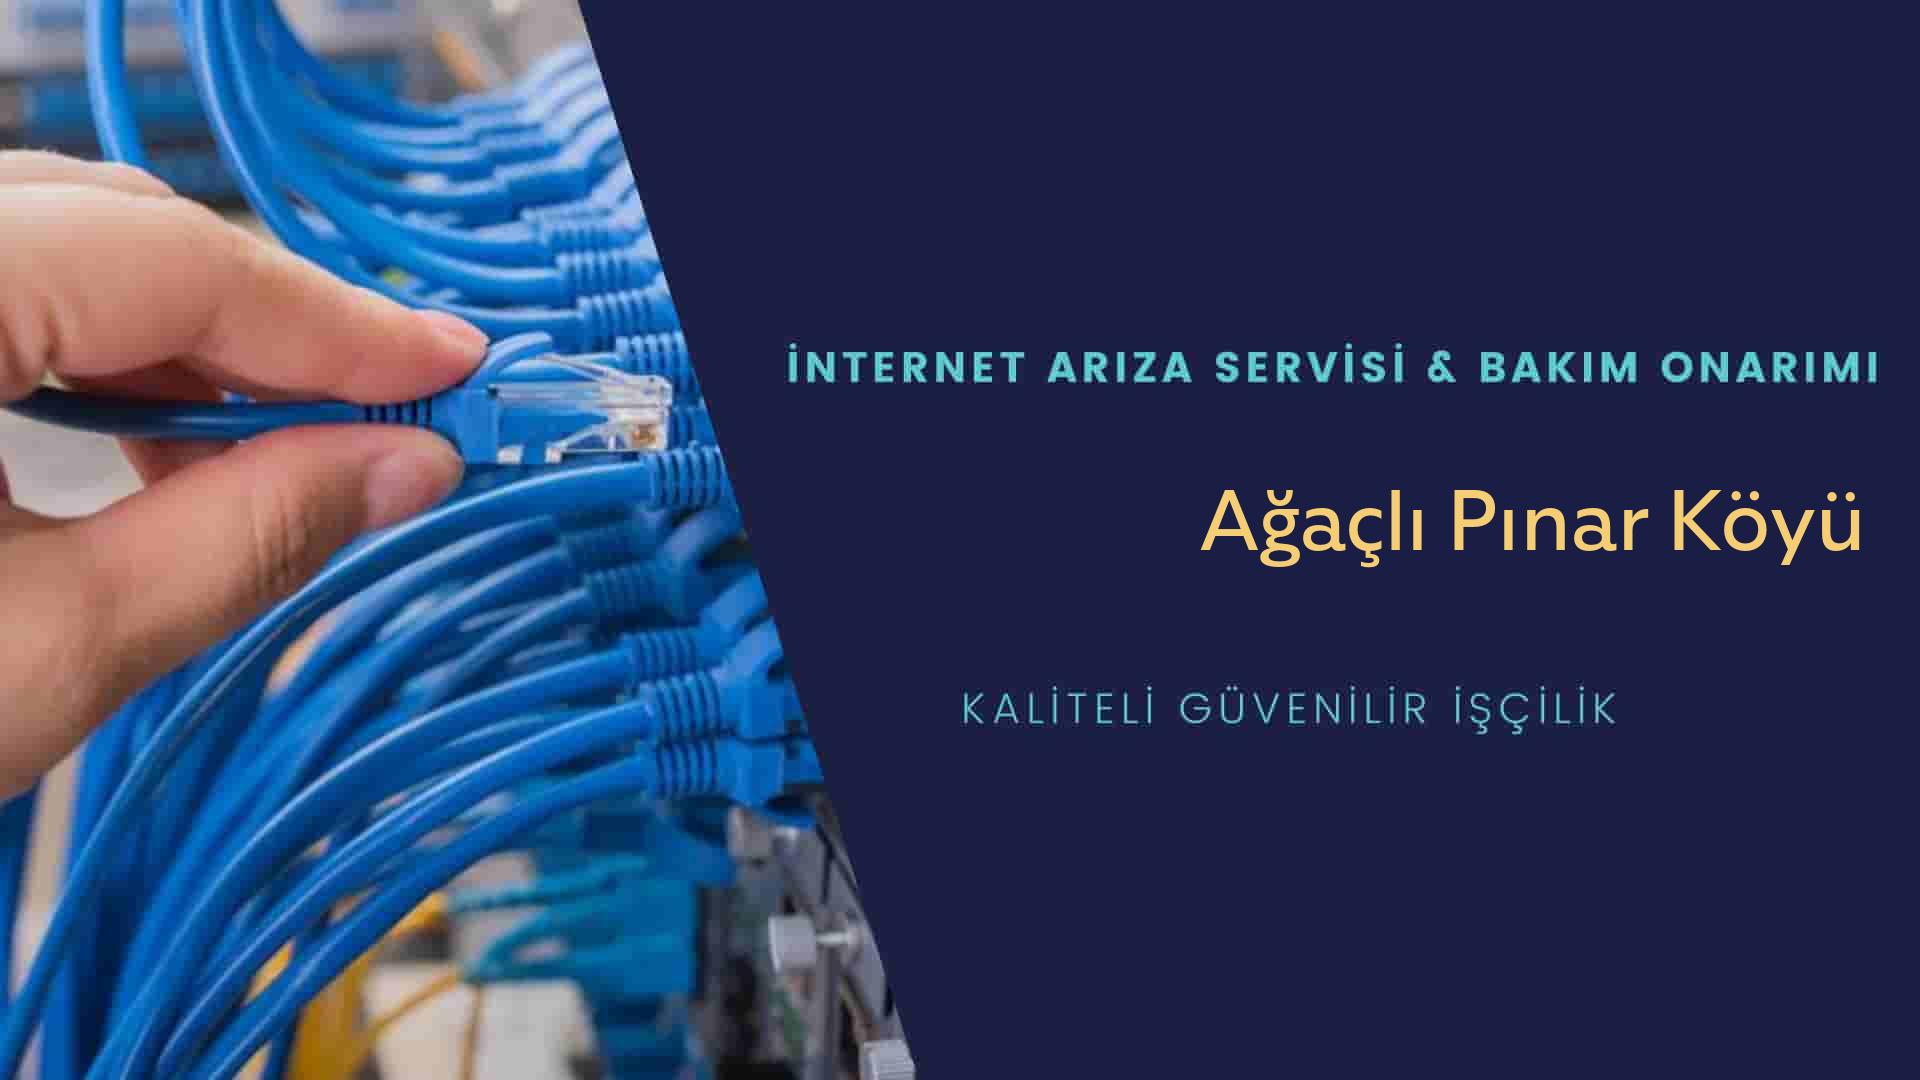 Ağaçlı Pınar Köyü internet kablosu çekimi yapan yerler veya elektrikçiler mi? arıyorsunuz doğru yerdesiniz o zaman sizlere 7/24 yardımcı olacak profesyonel ustalarımız bir telefon kadar yakındır size.